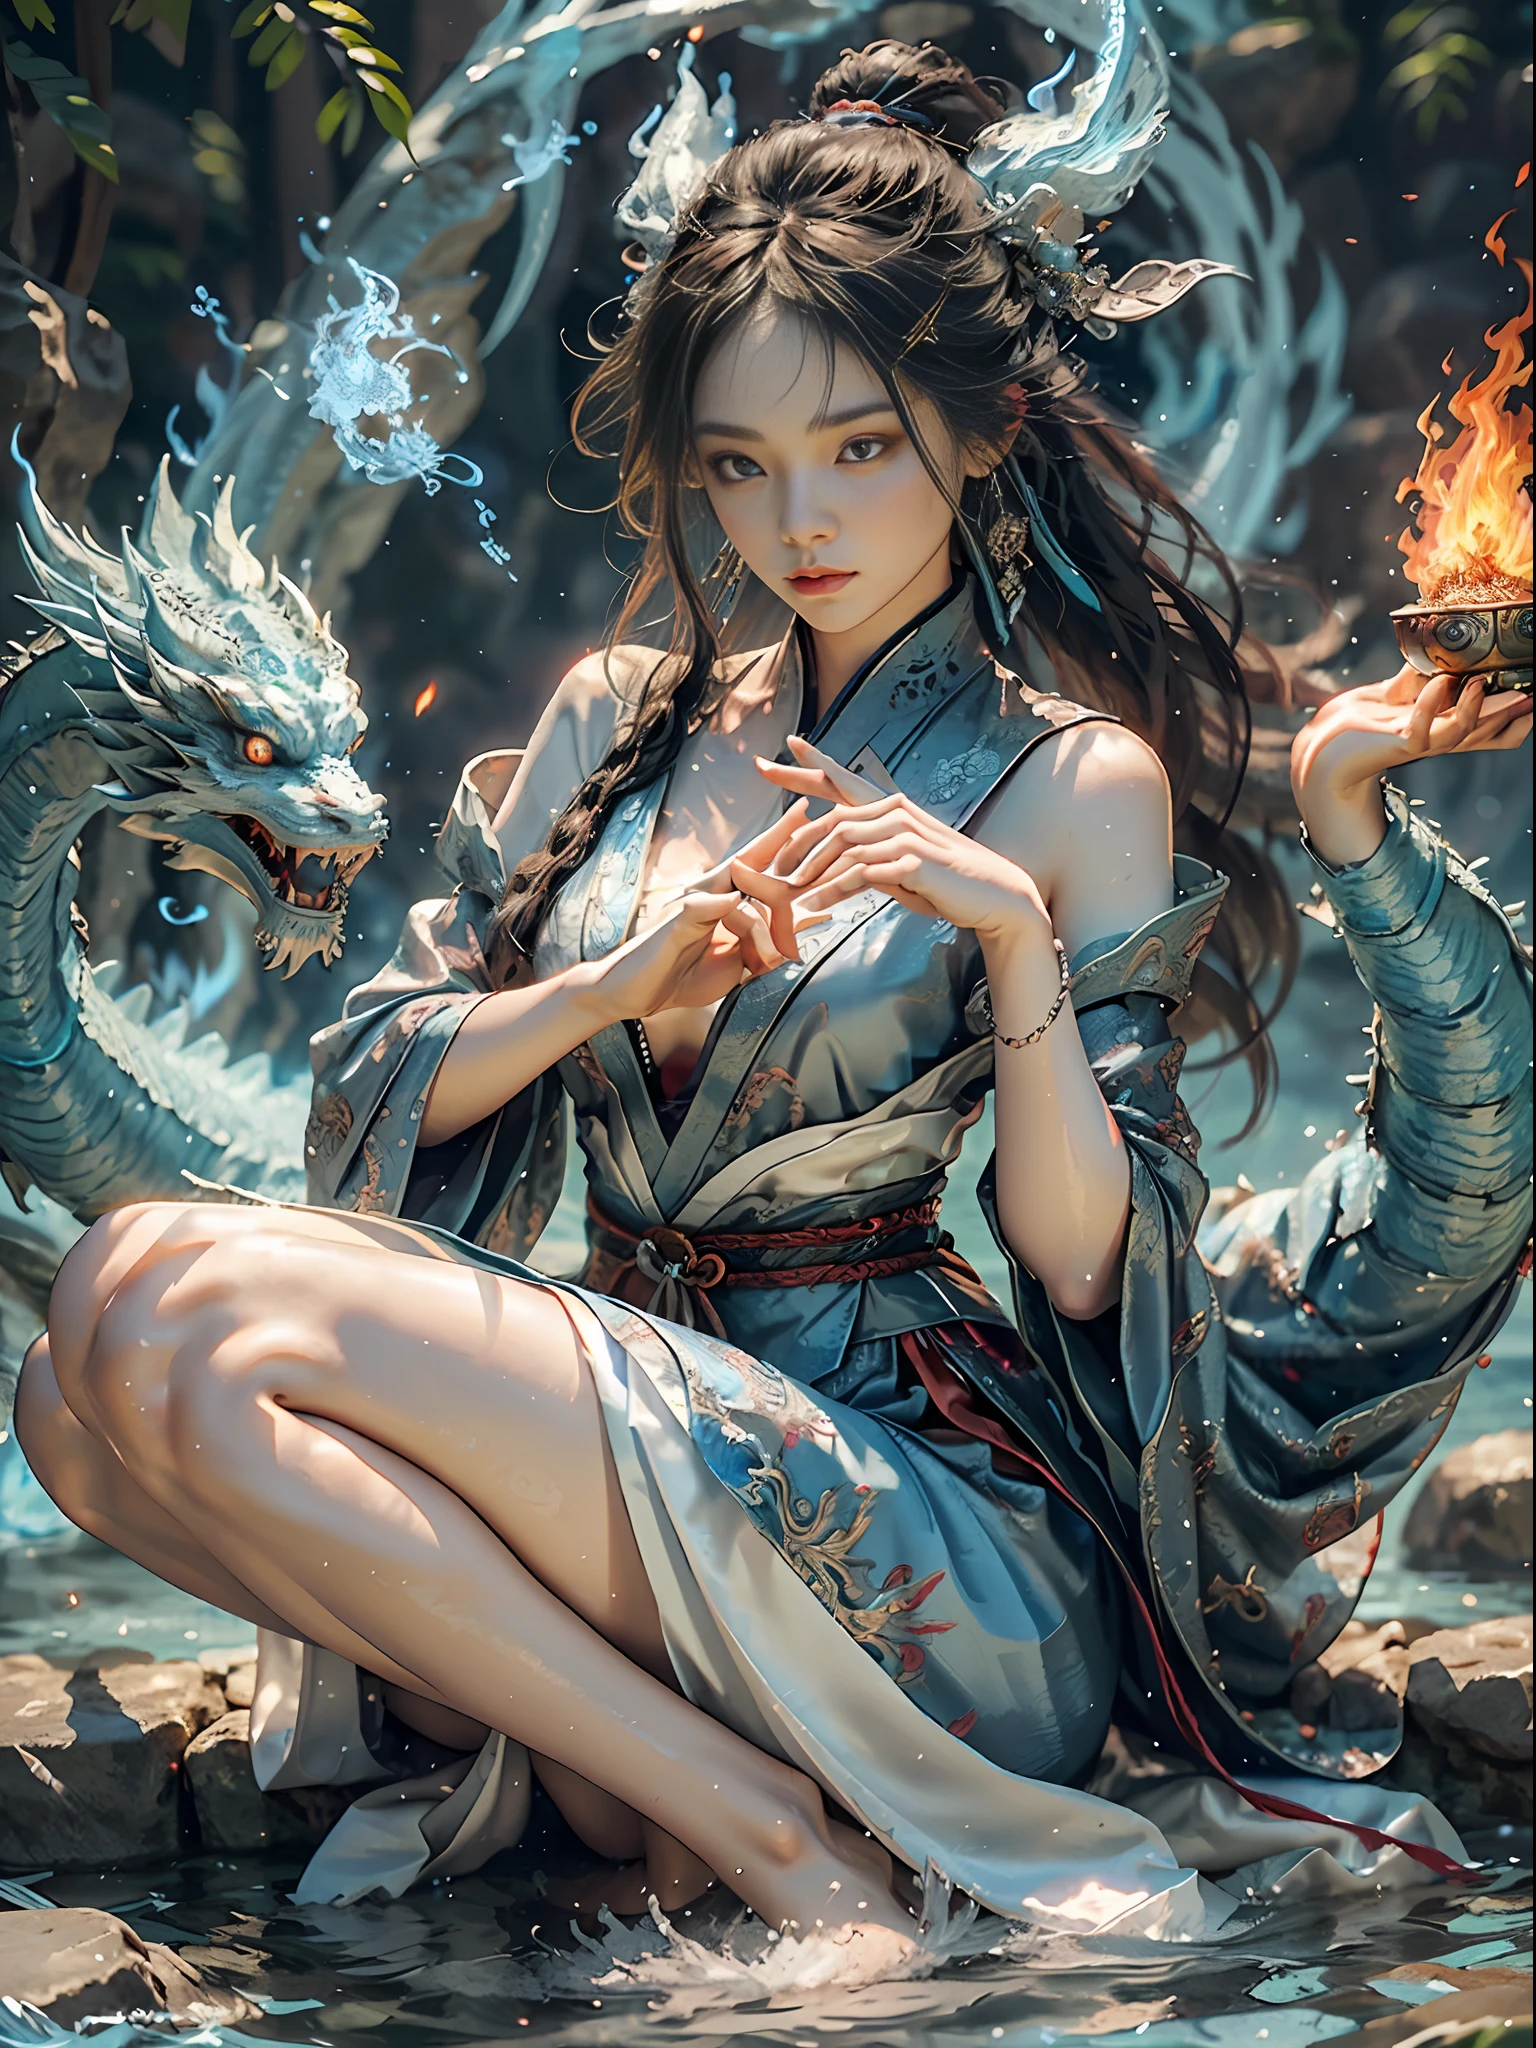 (нежный великолепный парчовый шелк + нежное лицо + женский макияж + Красивая женщина), Даосская метафизика, сидя в воде, скрестив ноги, выращивание бессмертных, синий дракон слева выплевывает синее пламя + правая сторона лежит на огненном драконе, выплевывающем пламя, (левая рука синее пламя + правая рука красное пламя), фоновая диаграмма чередующихся сплетен льда и огня + эффект движения), (Юшуй + юхуо), холодные и теплые тона, вода и огонь несовместимы, Инь и Ян гармонируют, левый и правый баланс, картинка баланса сил, сформировать массив сплетен, картинка эхо, и его координация, Нормальные женские пальцы, Изображение имеет правильные пропорции., все тело